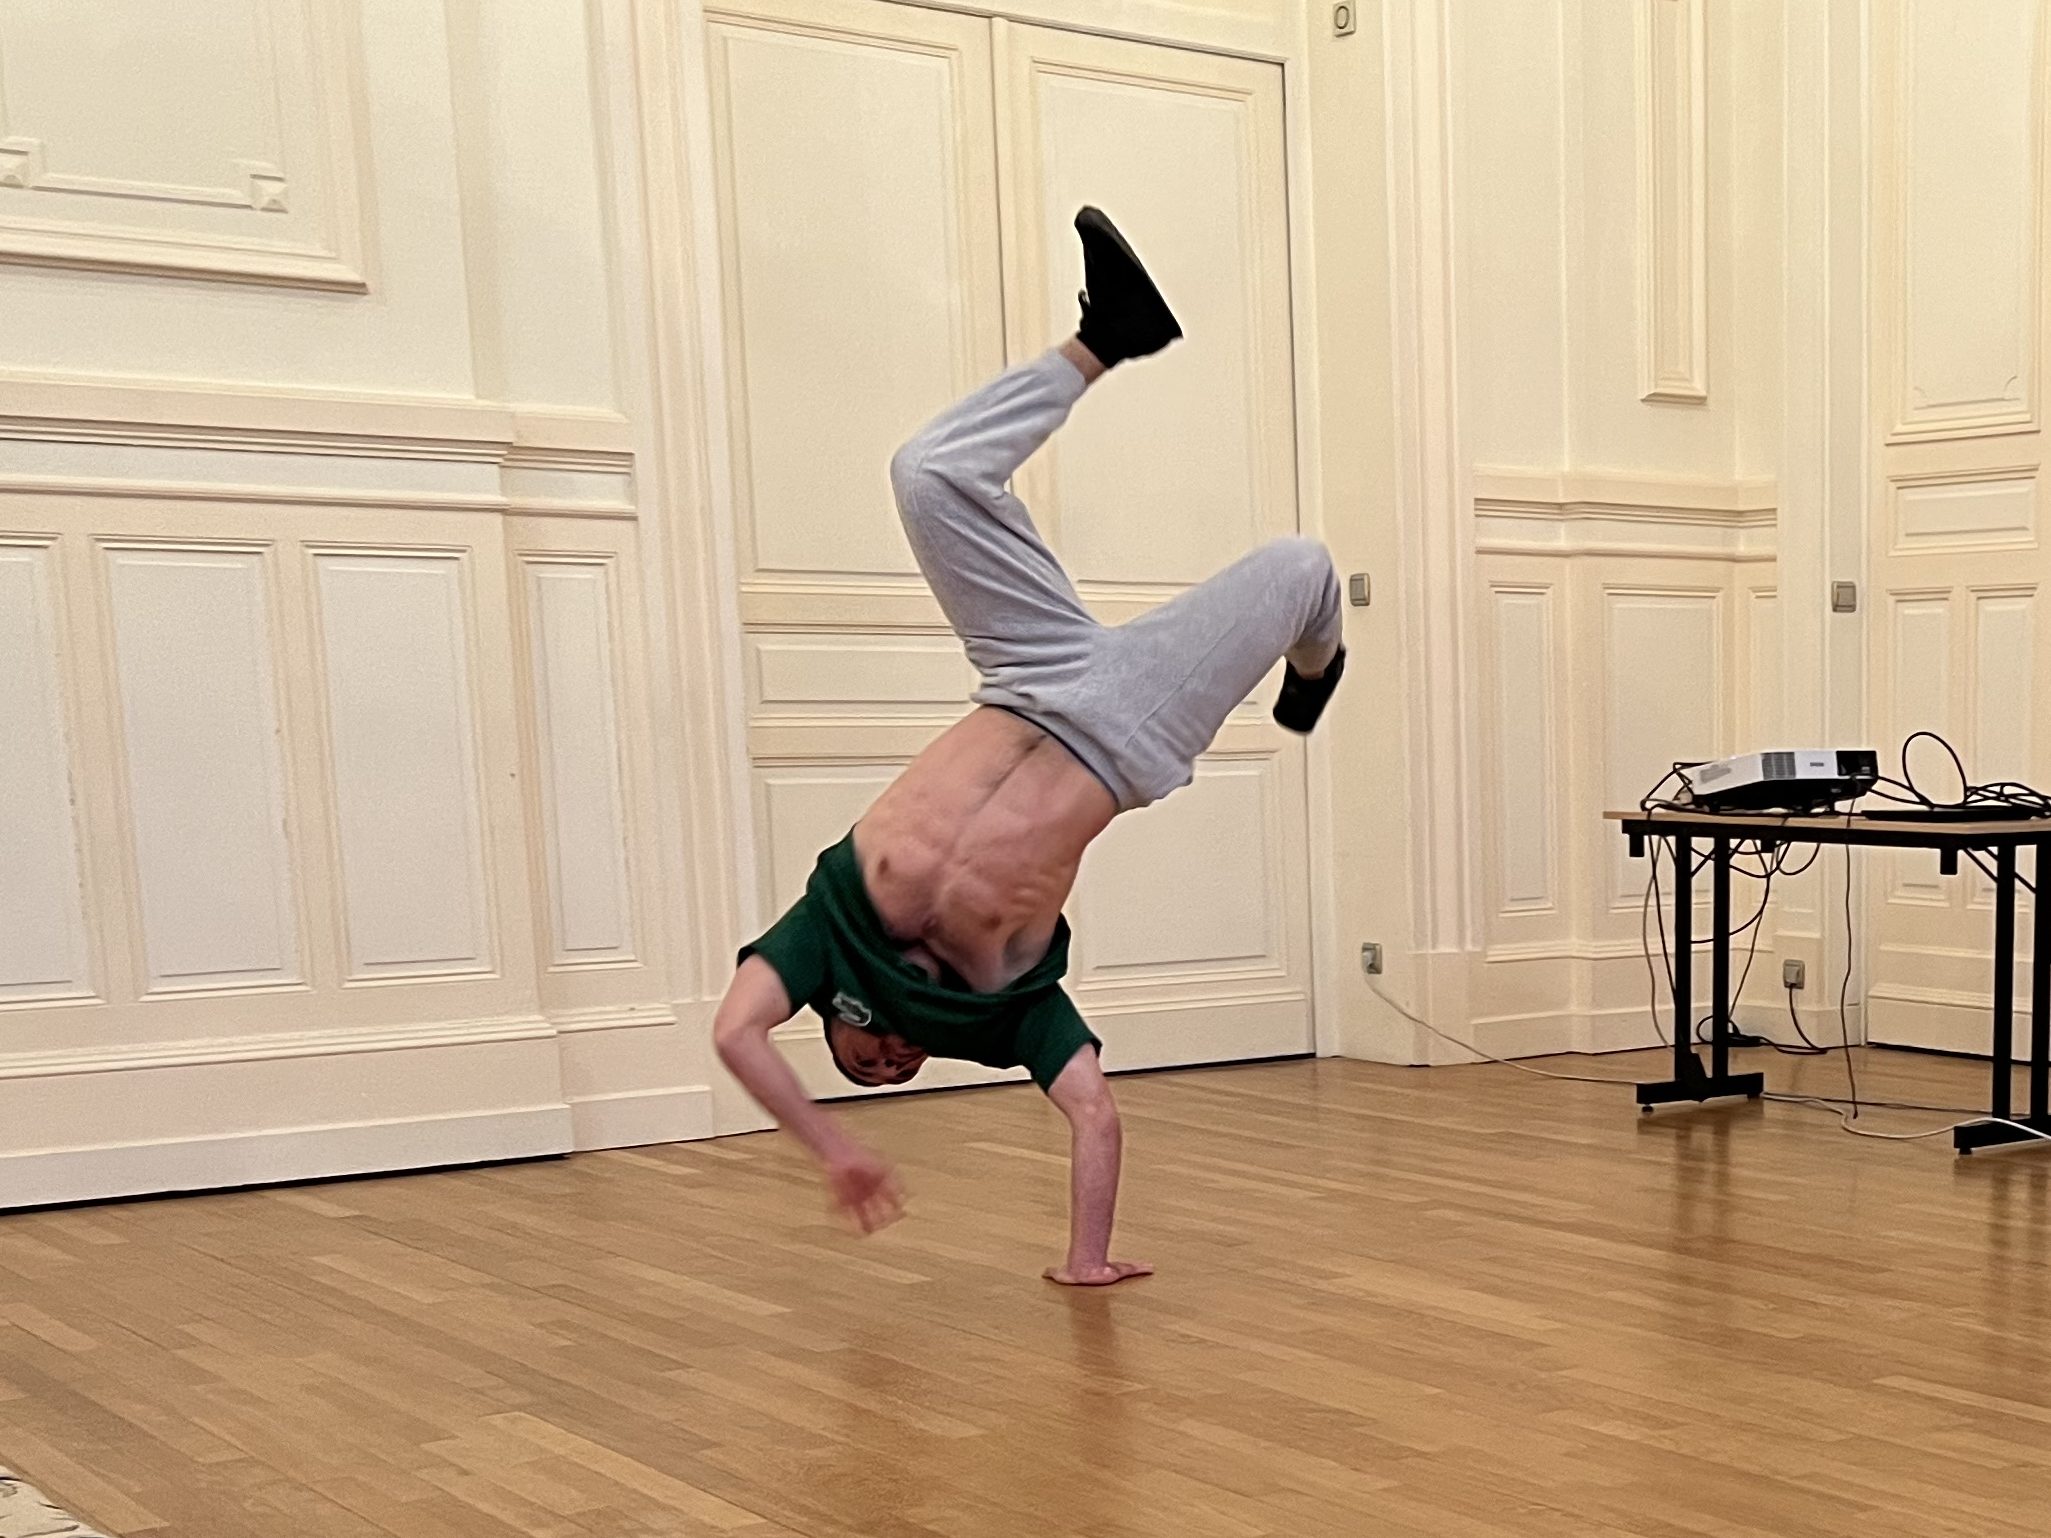 Démonstration de Breakdance de Marouane, de la Compagnie S'Poart, qui fait partie du projet en résidence dans les Vosges.